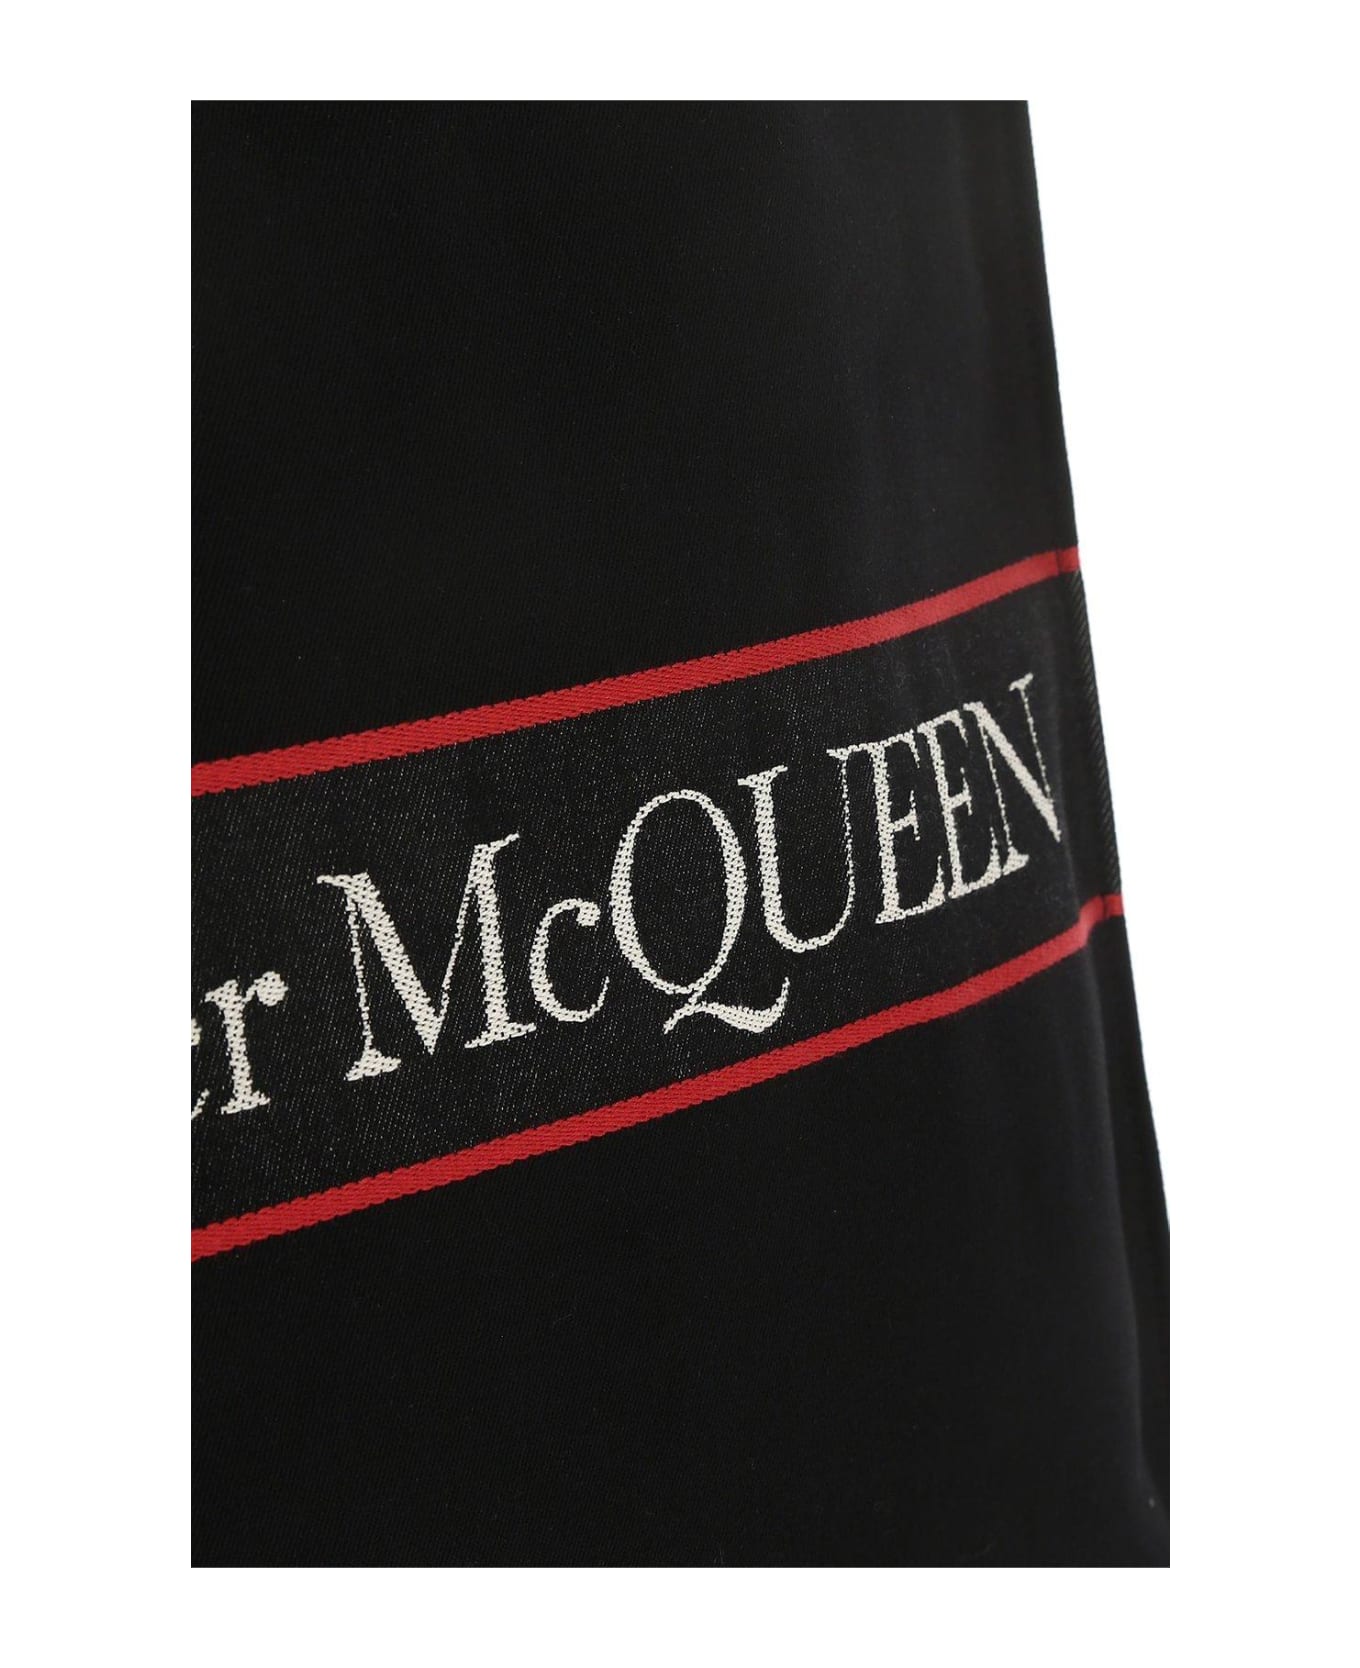 Alexander McQueen East West Selvedge Tote Bag - Geantă Ck Must Nylon Shoulder Bag Sm K60K609618 0JW